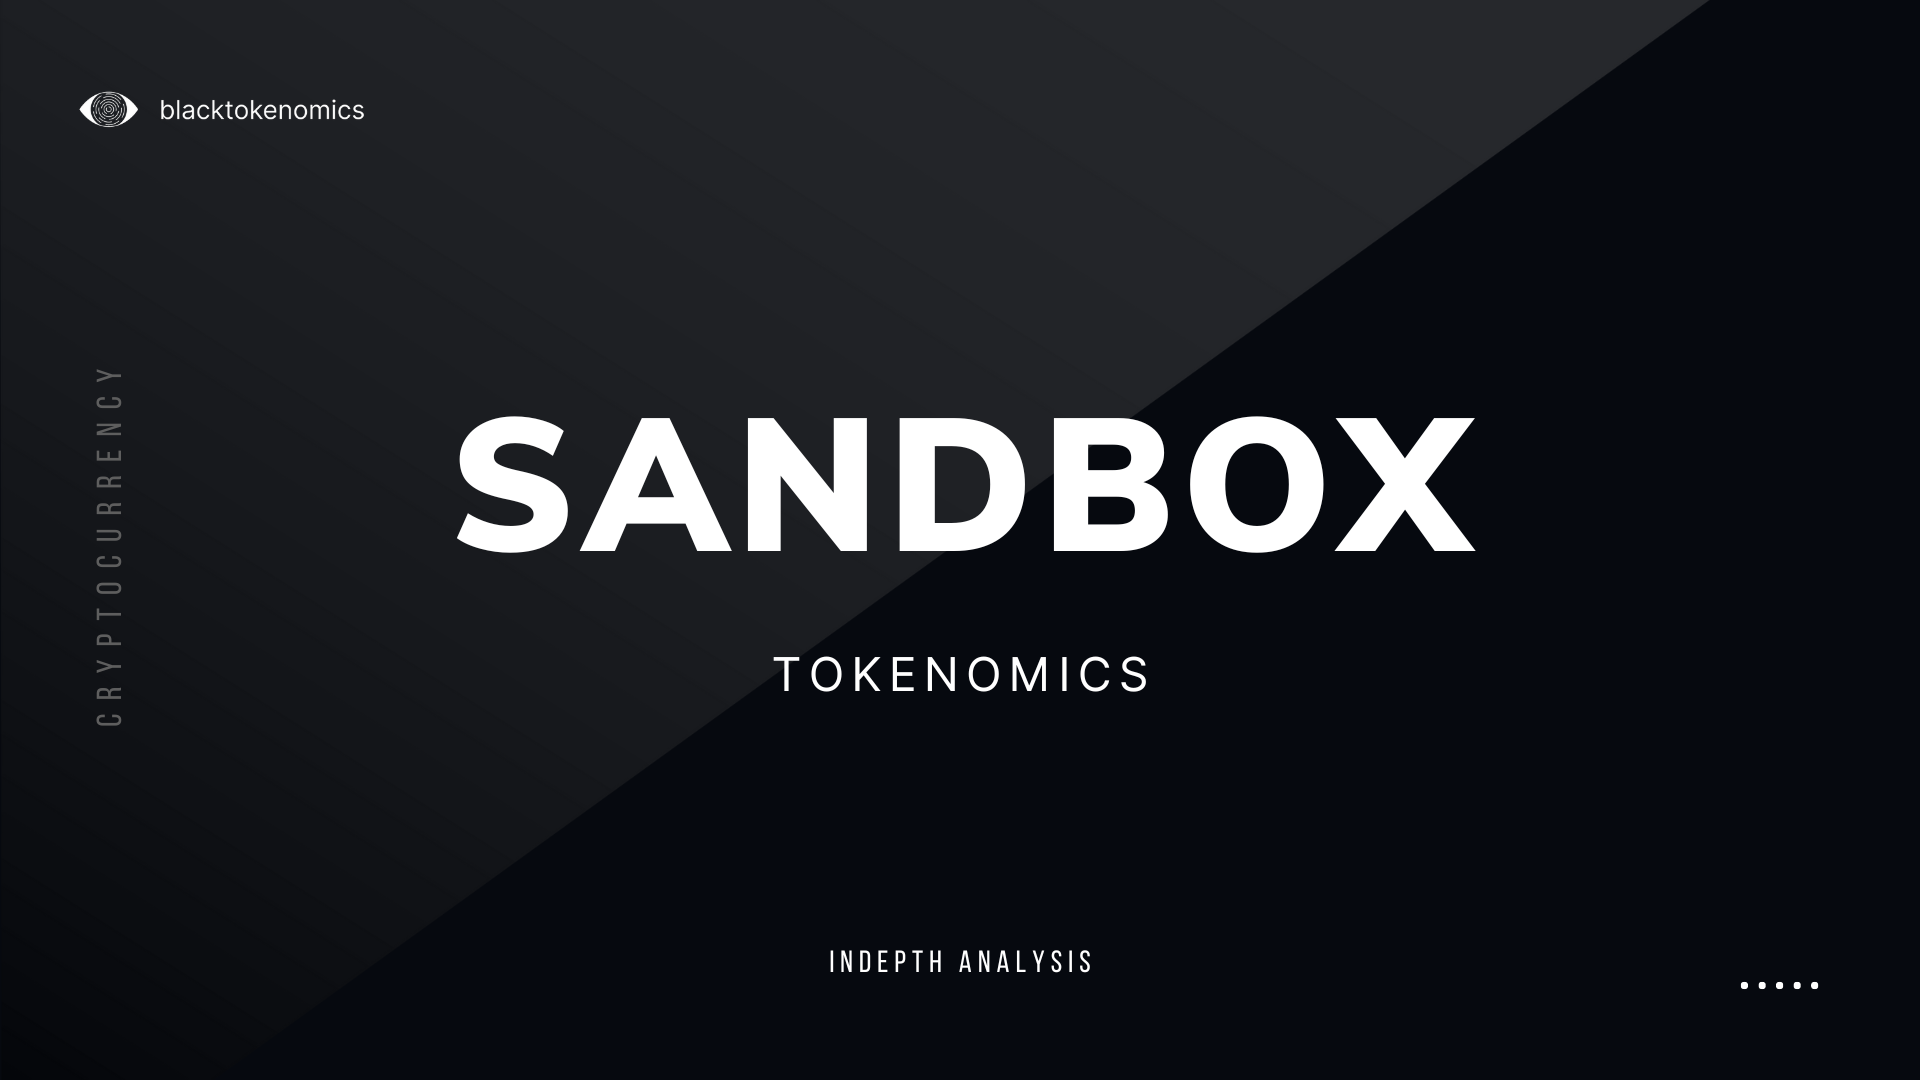 sandbox tokenomics